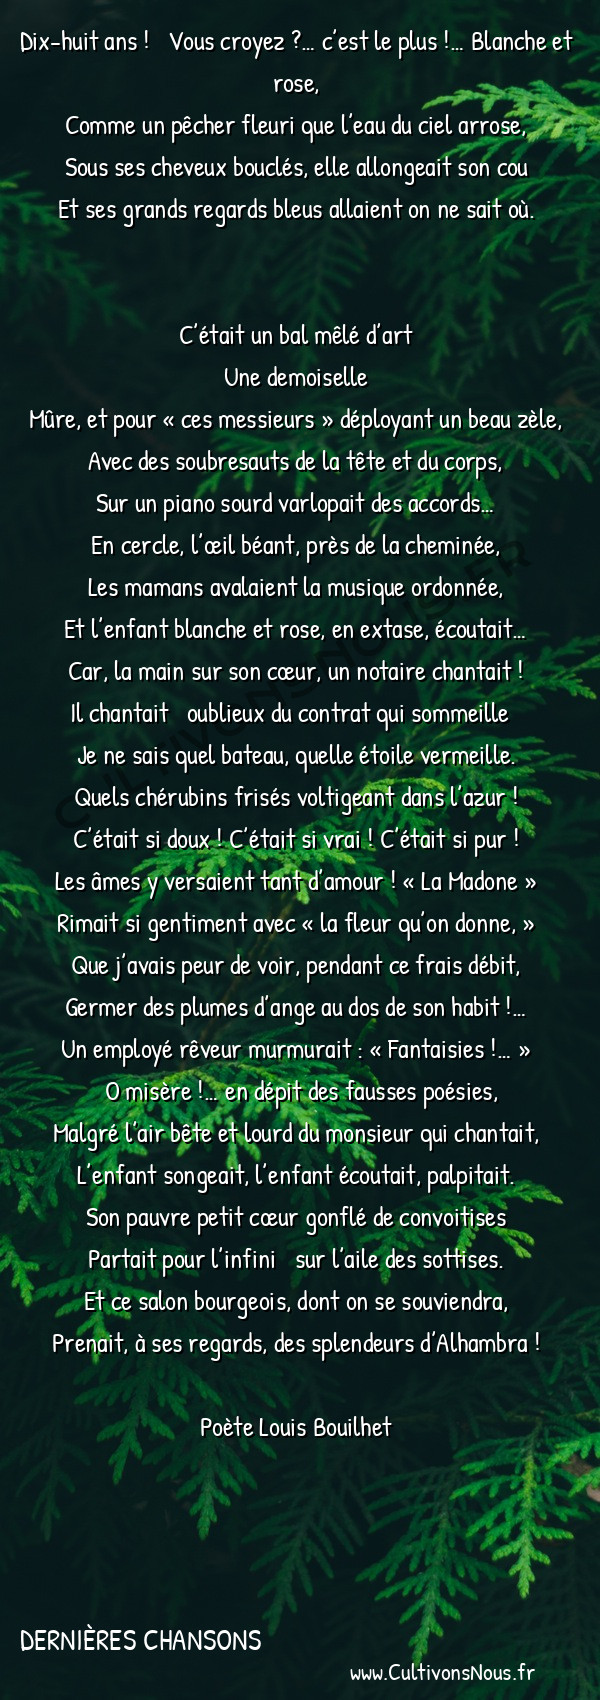  Poète Louis Bouilhet - Dernières chansons - Une soirée -   Dix-huit ans ! ― Vous croyez ?… c’est le plus !… Blanche et rose, Comme un pêcher fleuri que l’eau du ciel arrose,